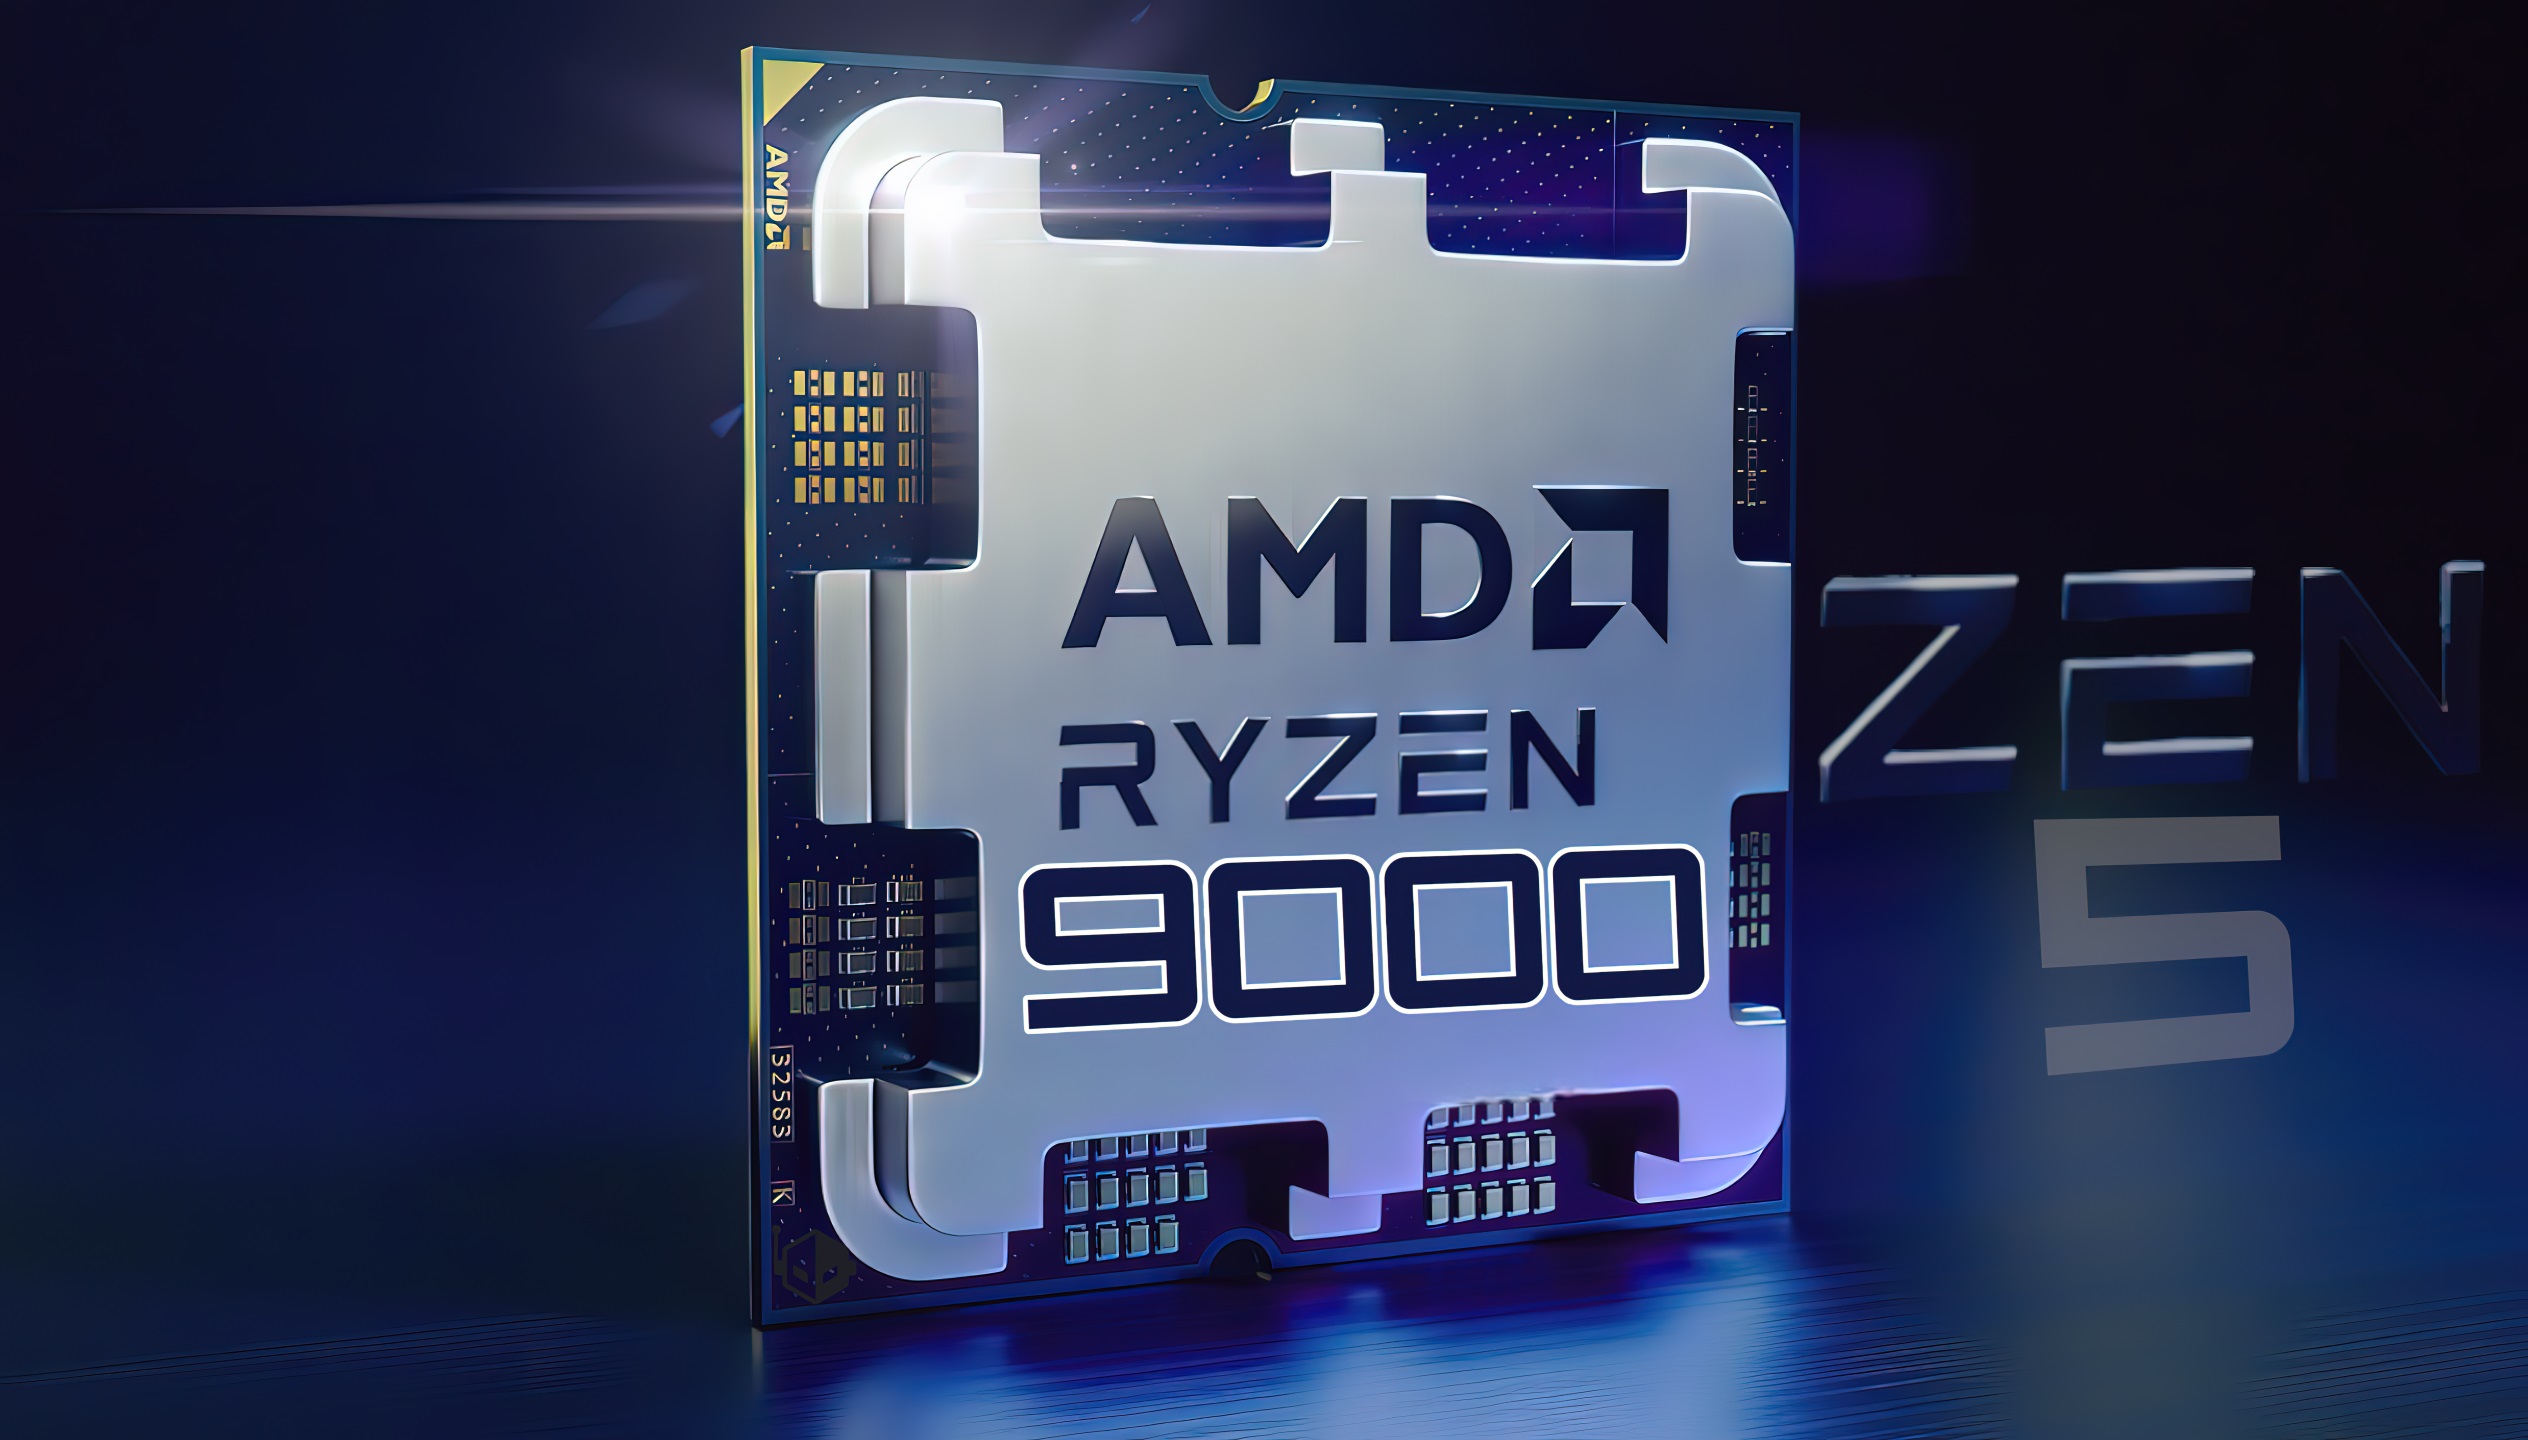 Se rumorea que los precios de la CPU AMD Ryzen 9000 son los mismos que los del Ryzen 7000